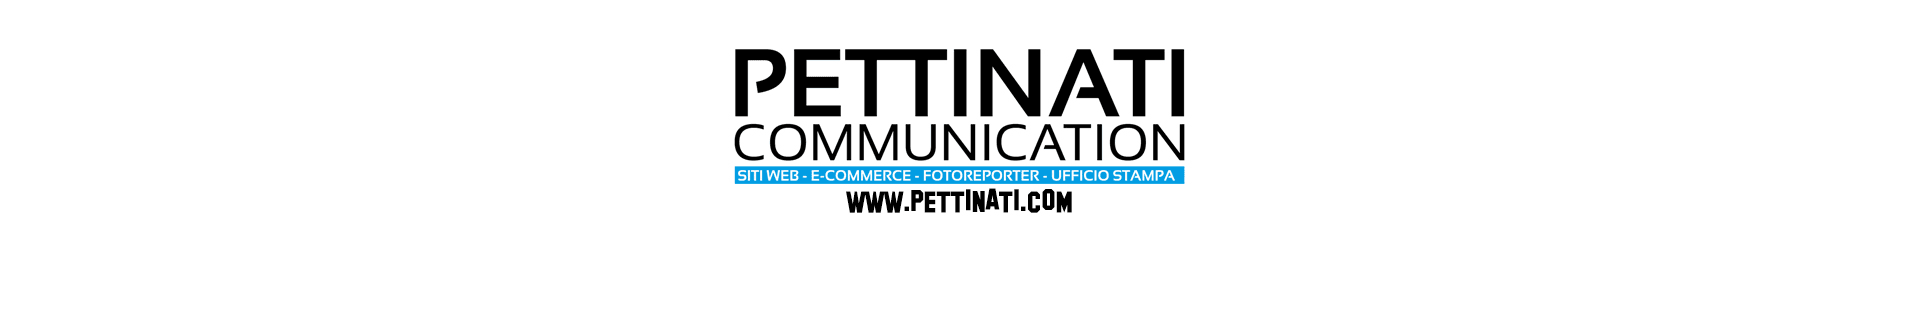 pettinati_communication banner